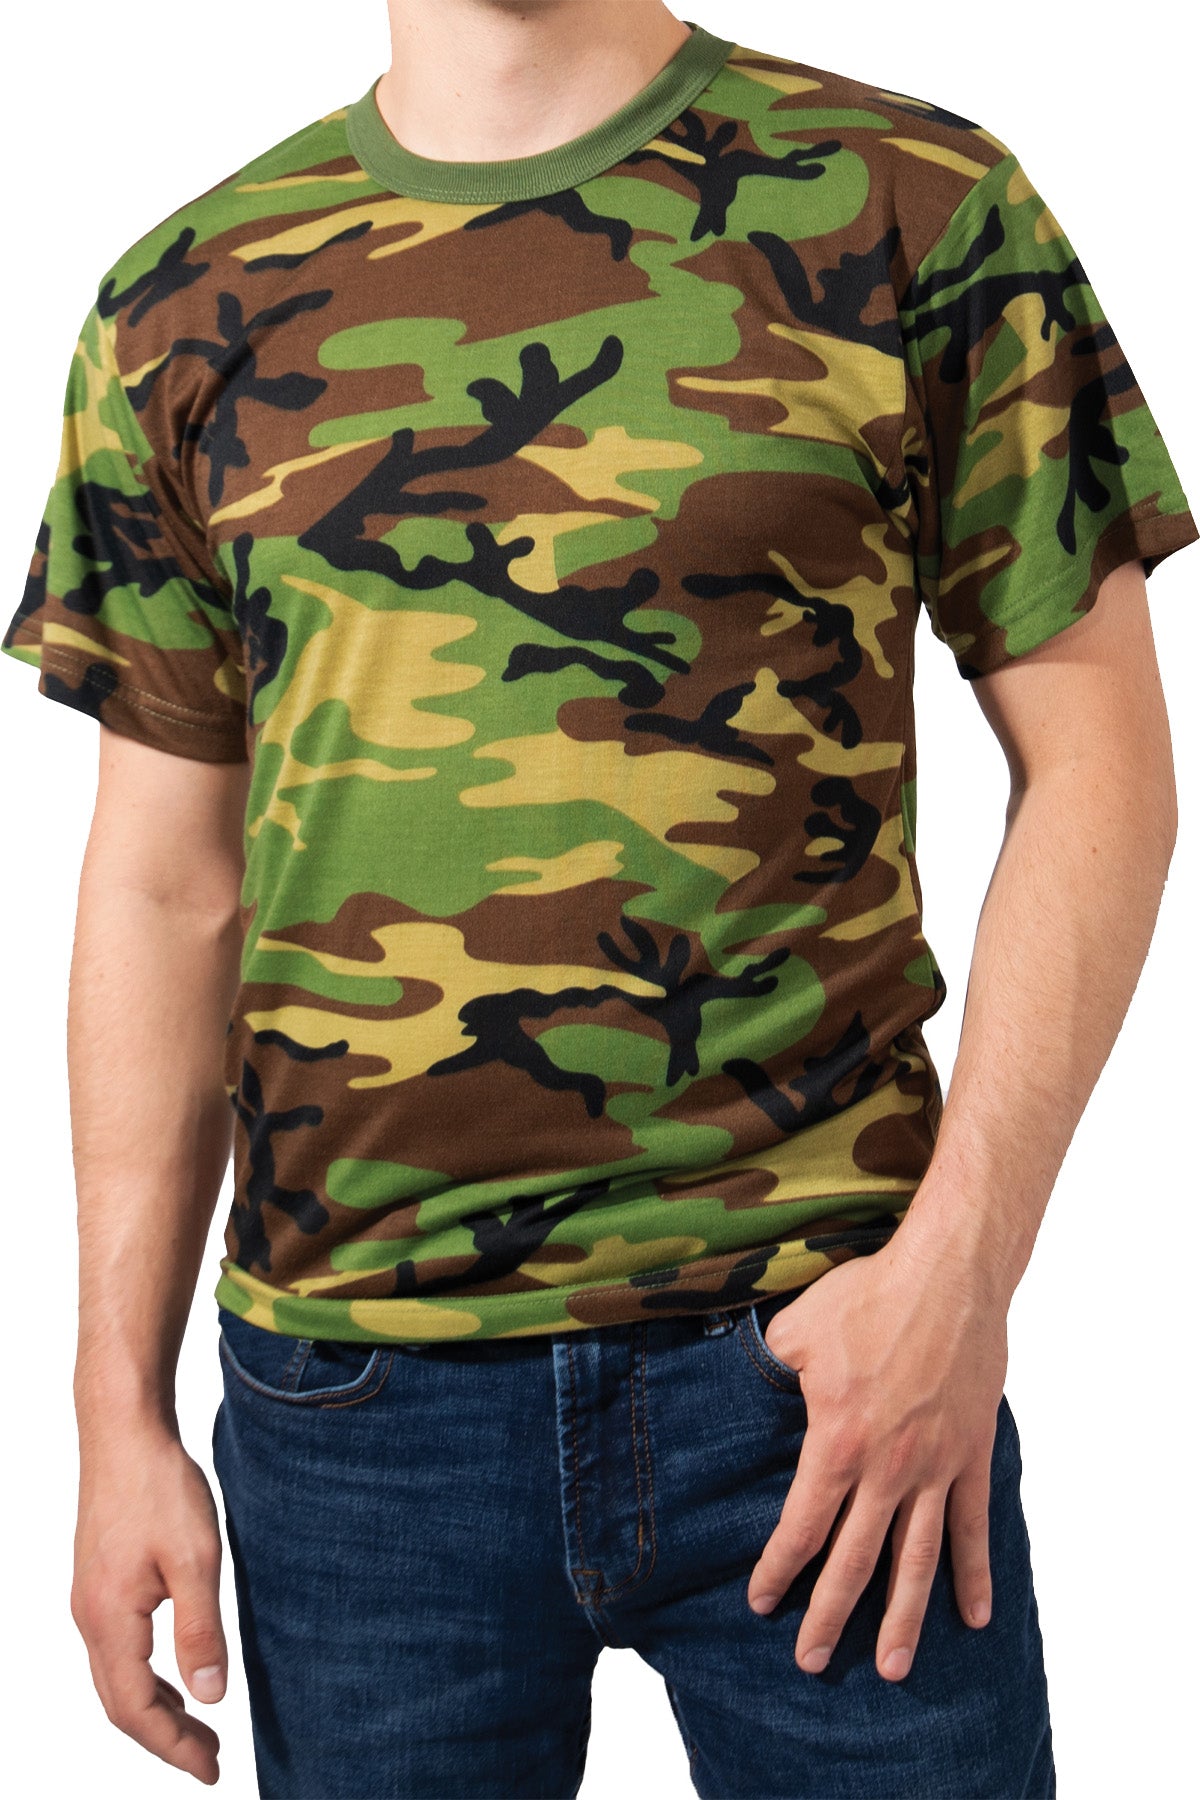 Rothco Camo T-Shirt - Woodland Camo - M